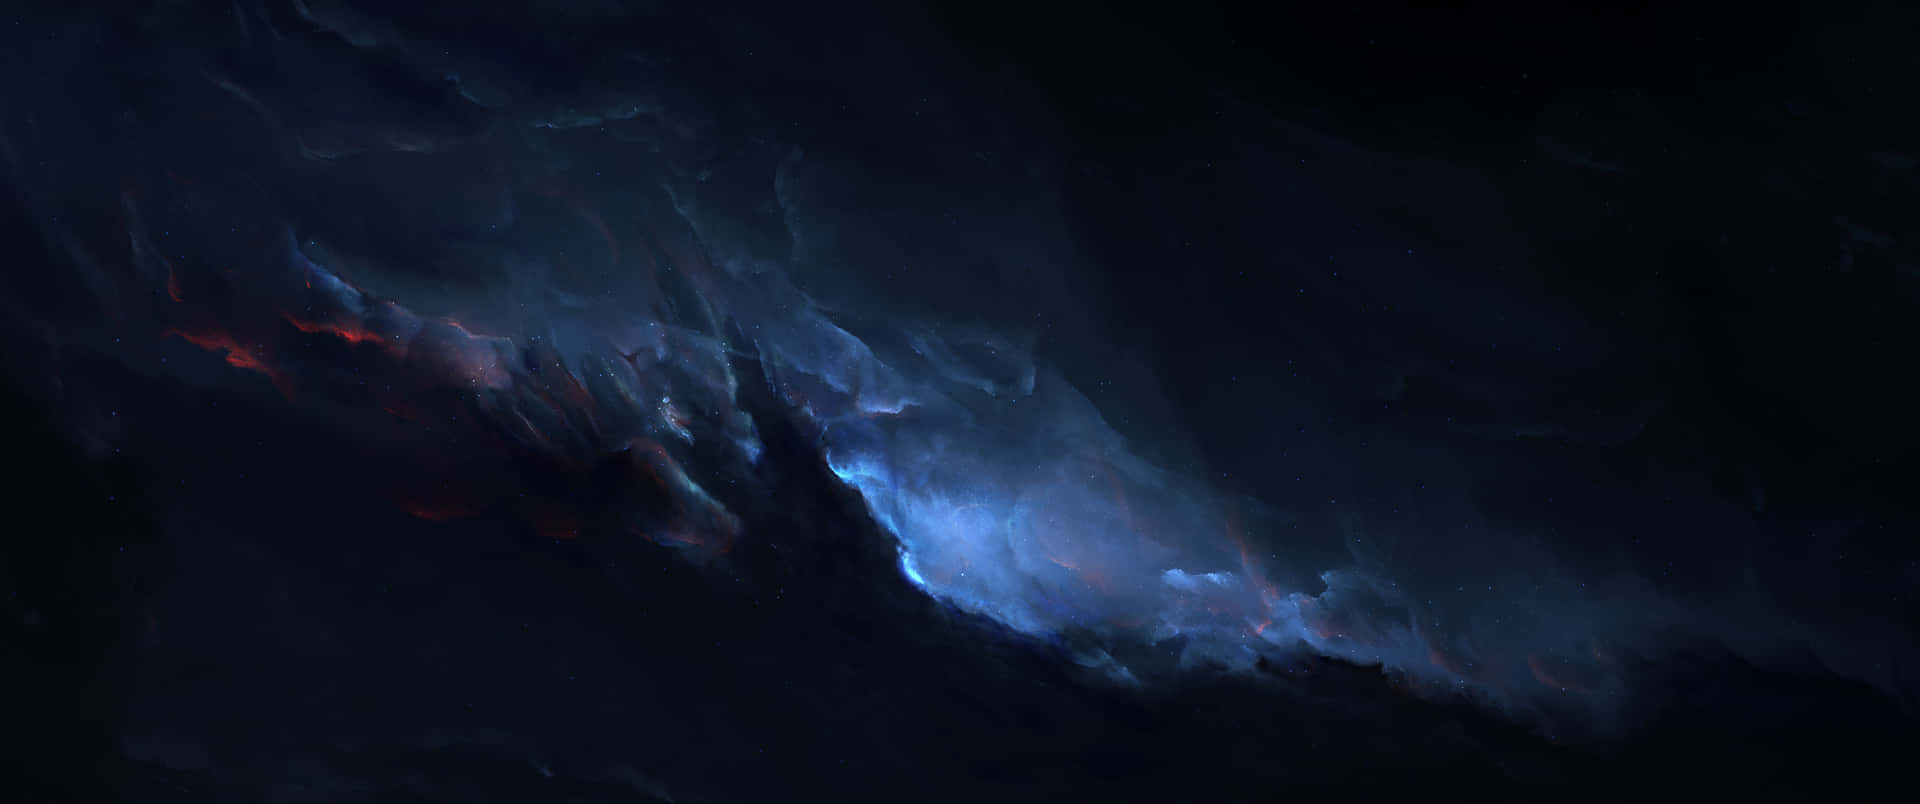 3440x1440p Dark Blue Nebula Background